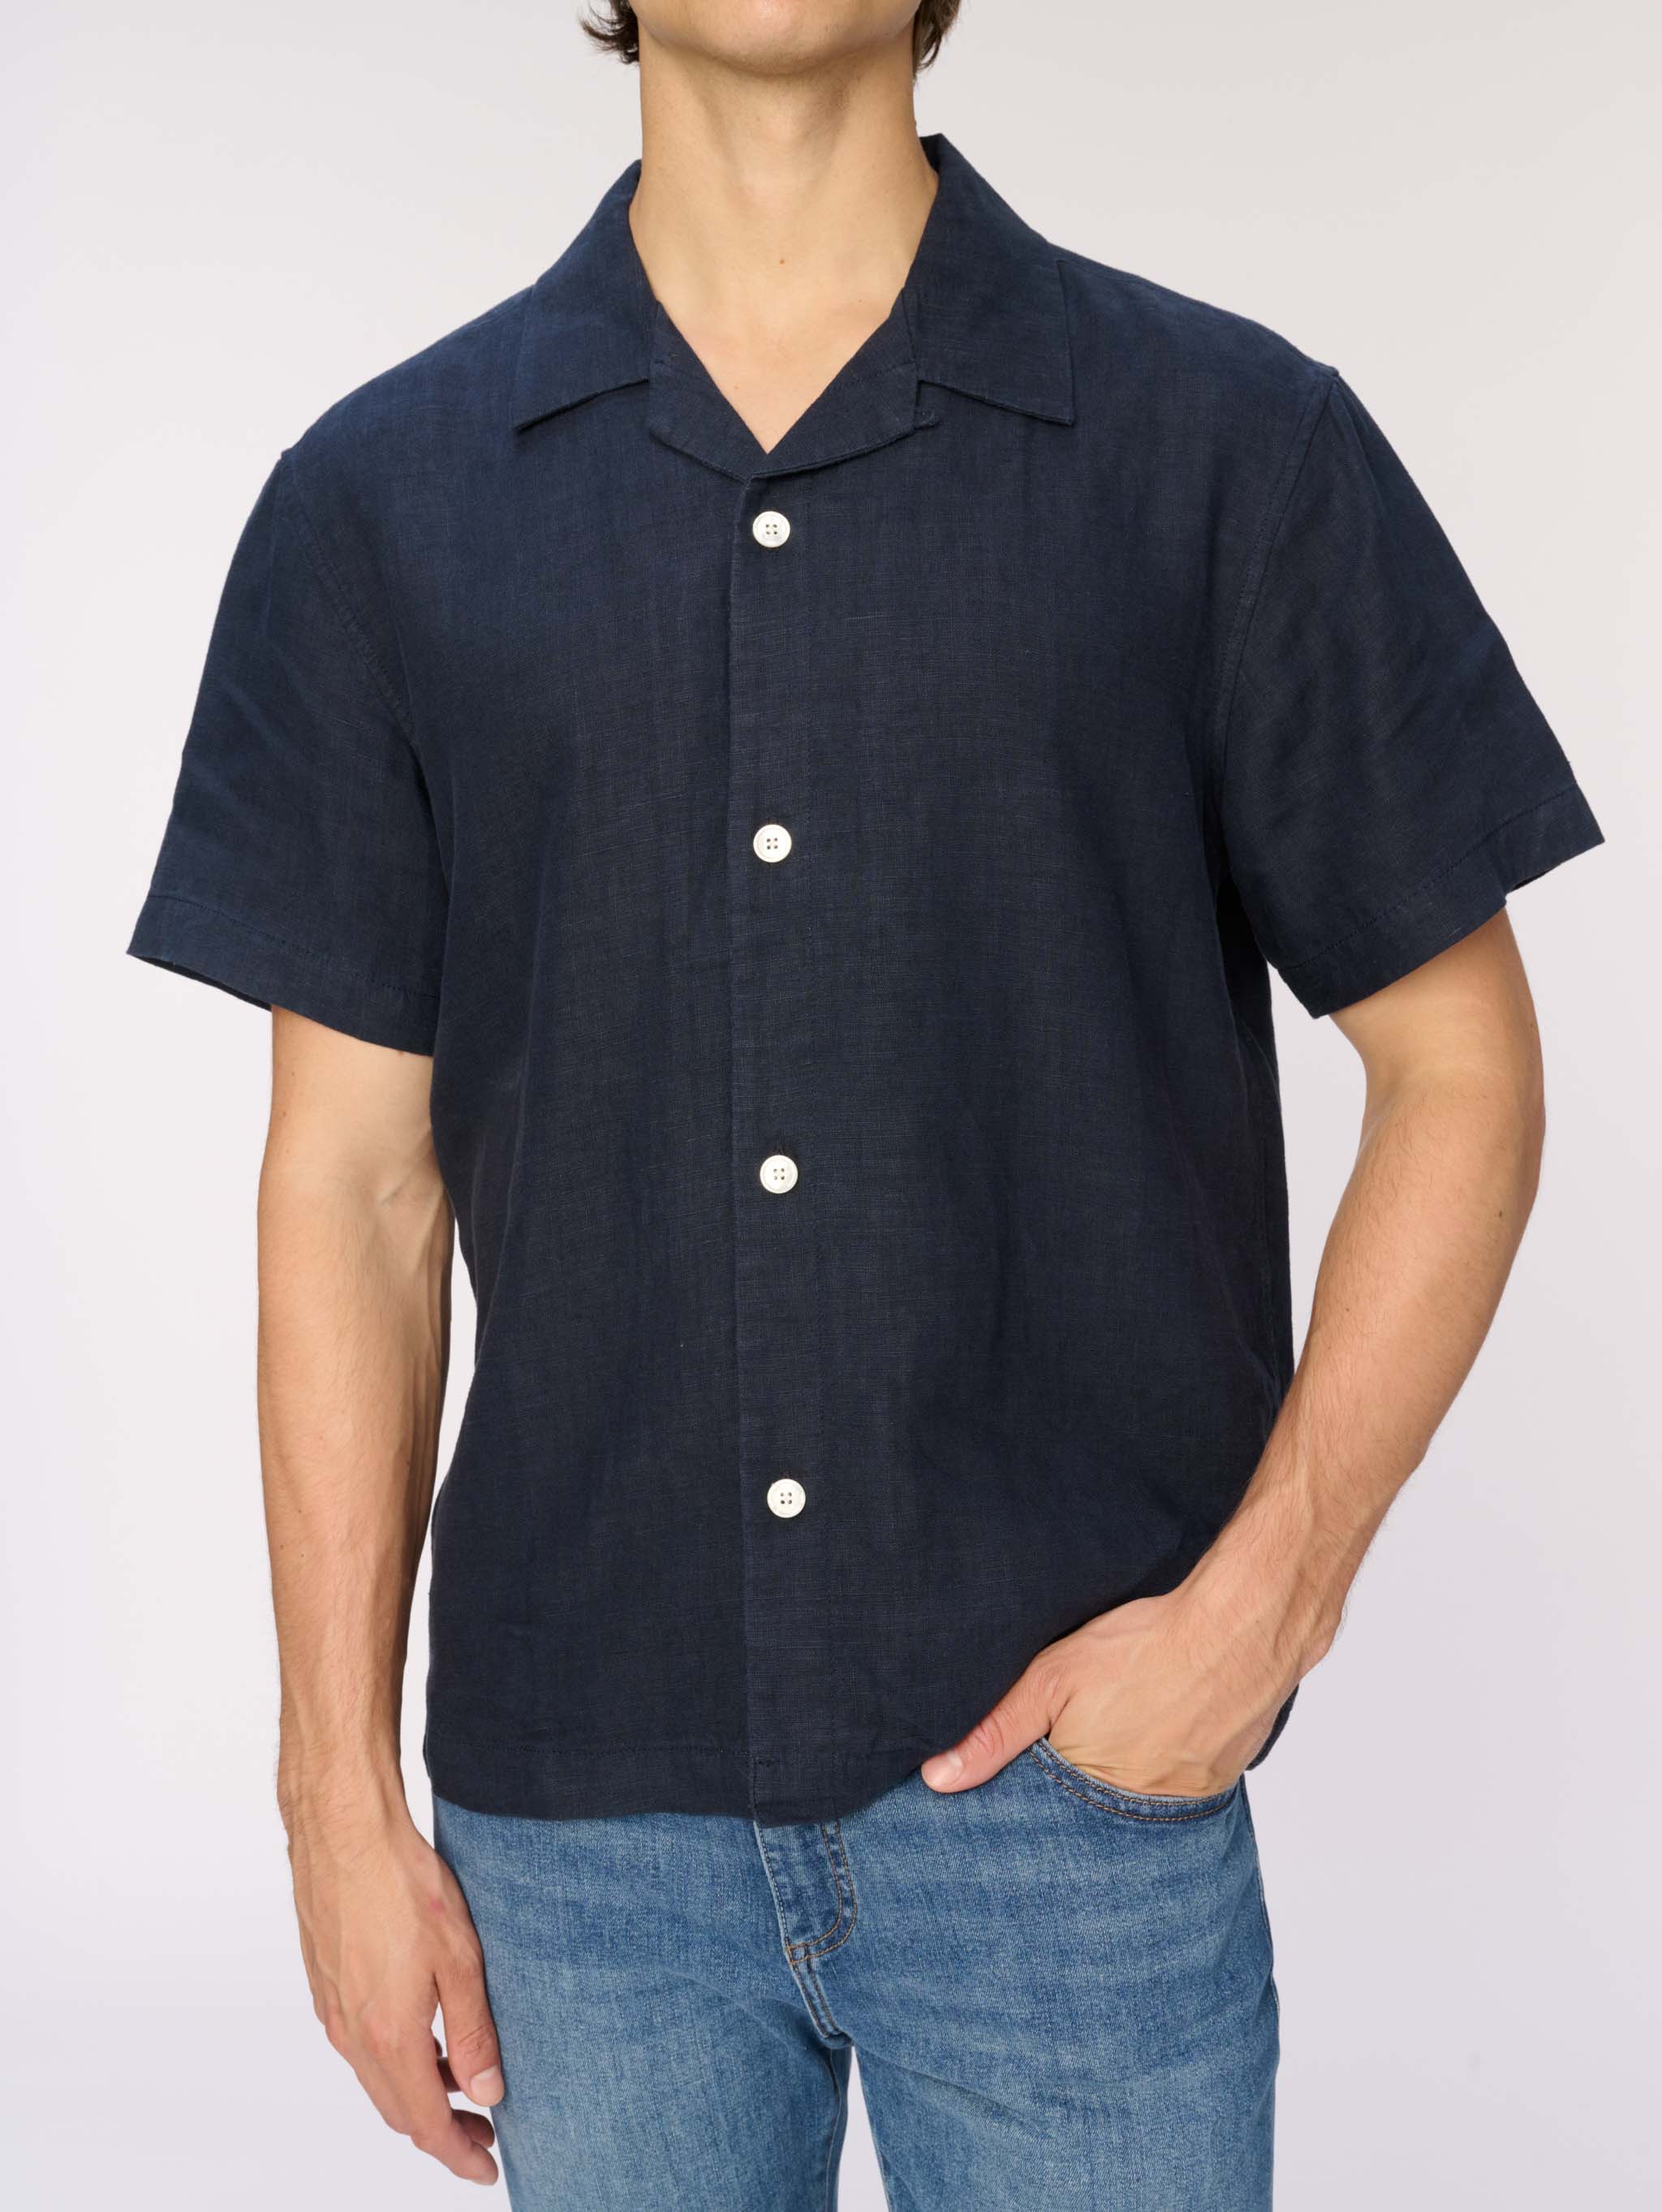 Hugh Shirt | Classic Navy Linen